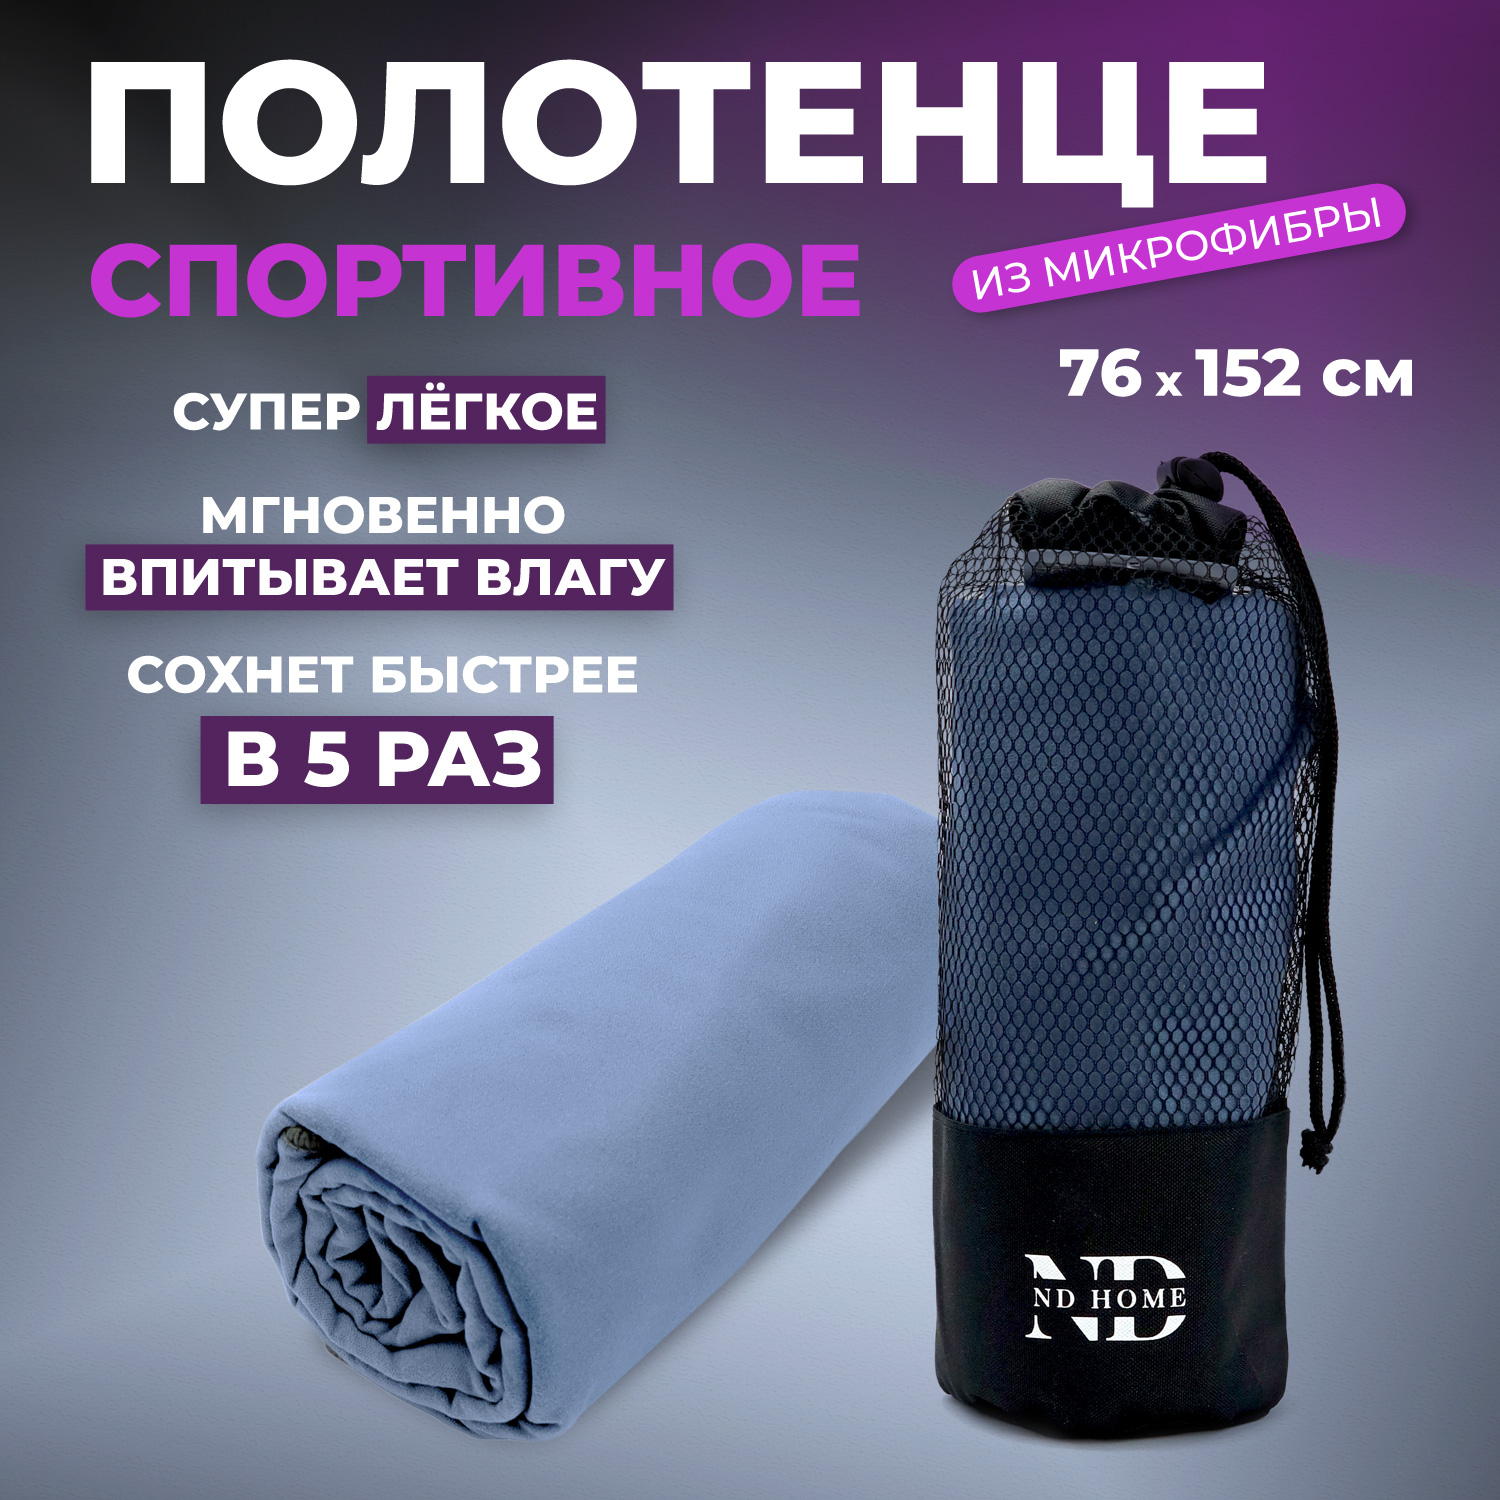 Полотенце спортивное ND Play 310564, микрофибра, 76*152см, синий - купить в Москве, цены на Мегамаркет | 600017158445